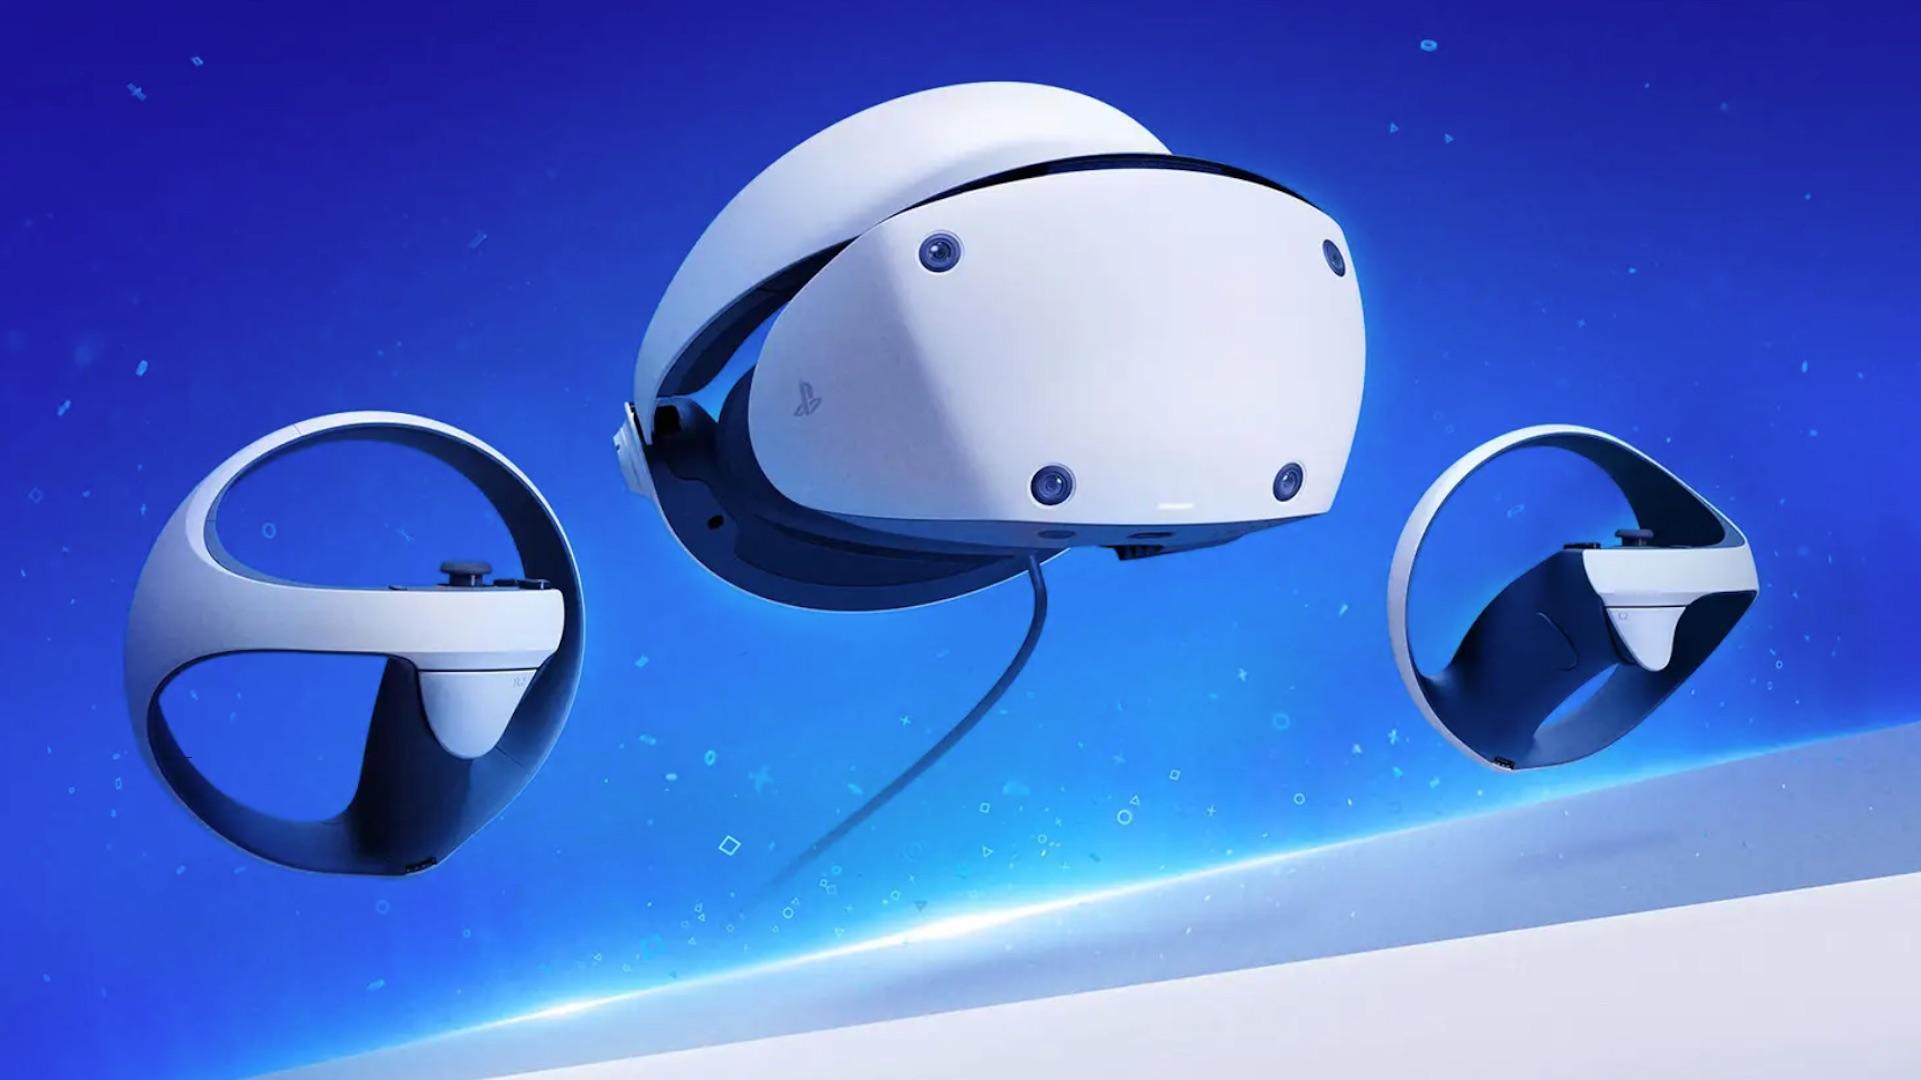 PlayStation VR - Casque de réalité virtuelle PS4 - Achat jeux